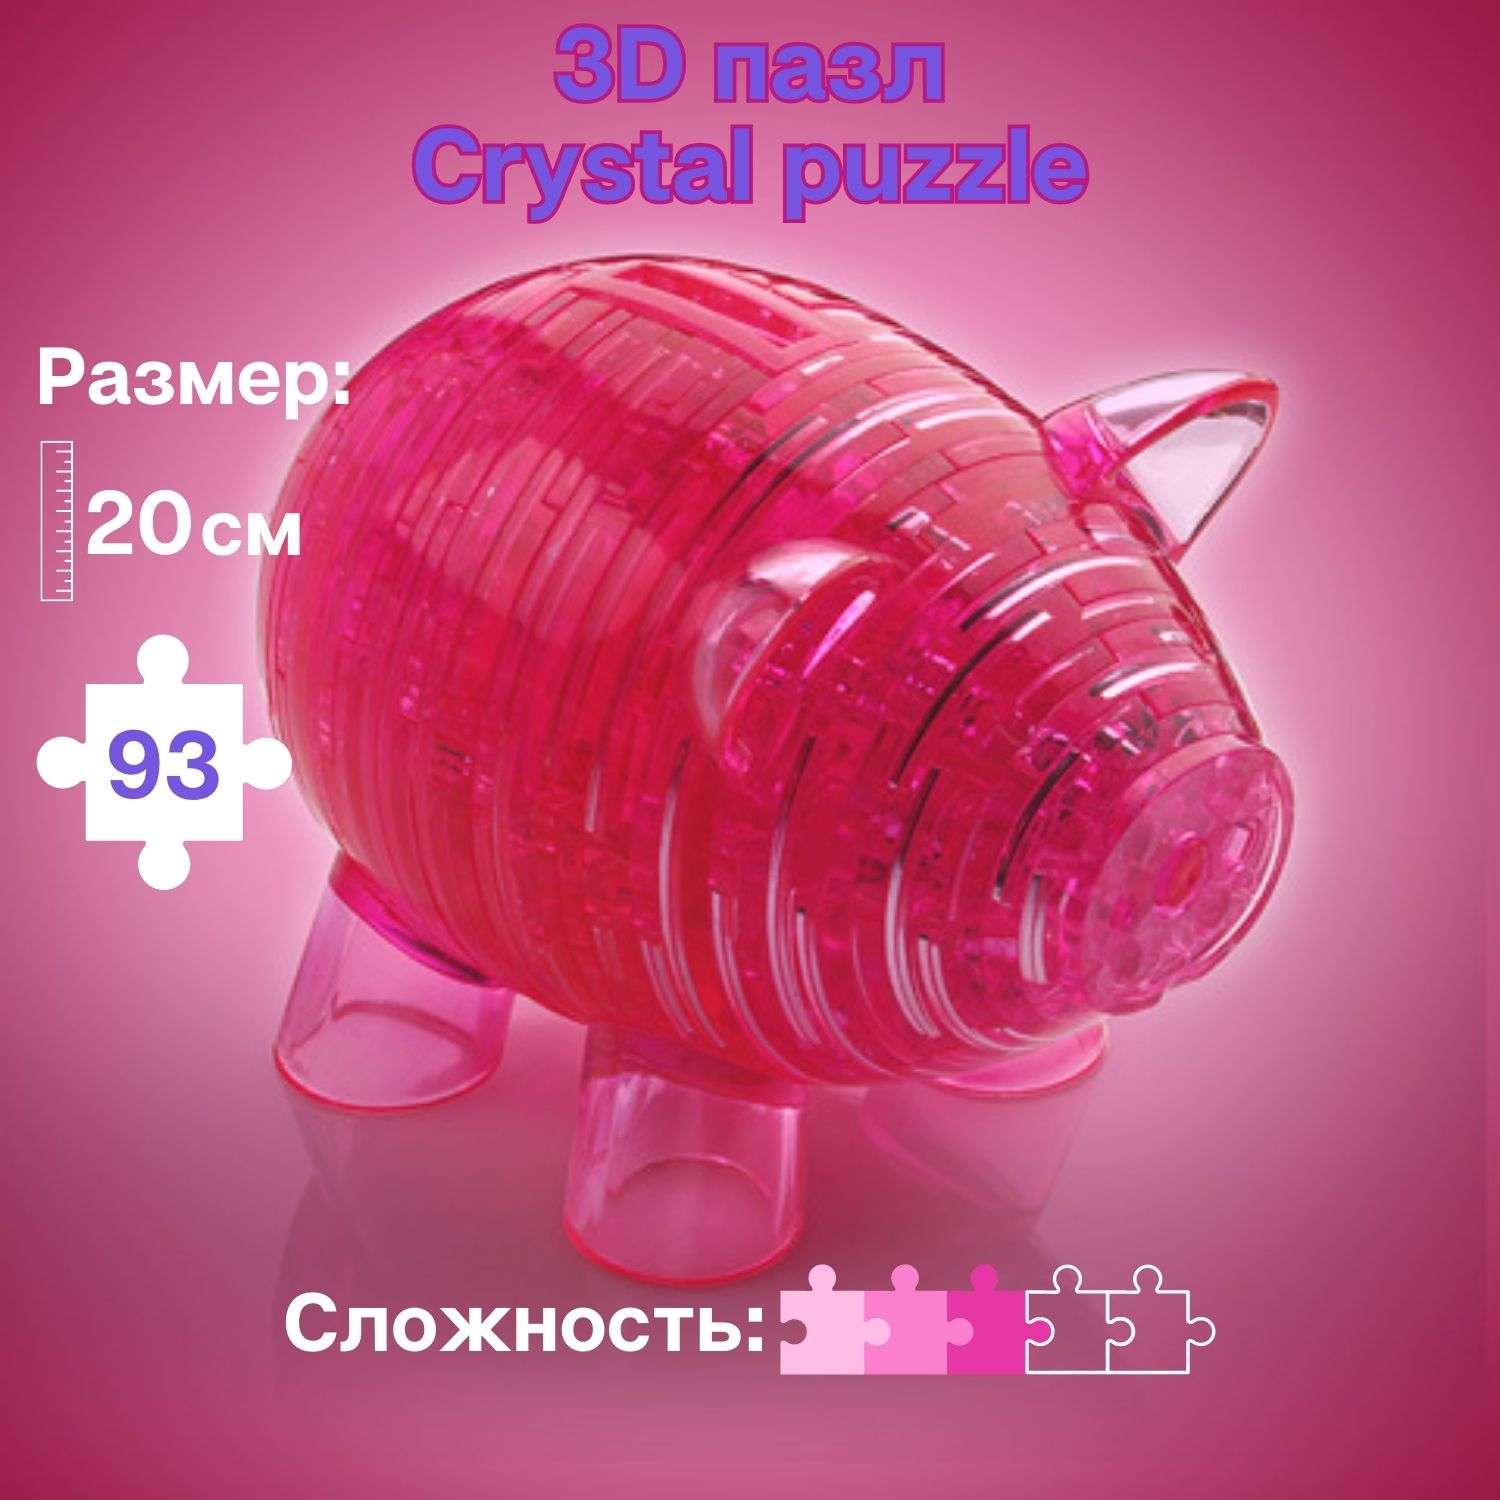 3D-пазл Crystal Puzzle IQ игра для детей кристальная копилка Свинка розовая 93 детали - фото 1